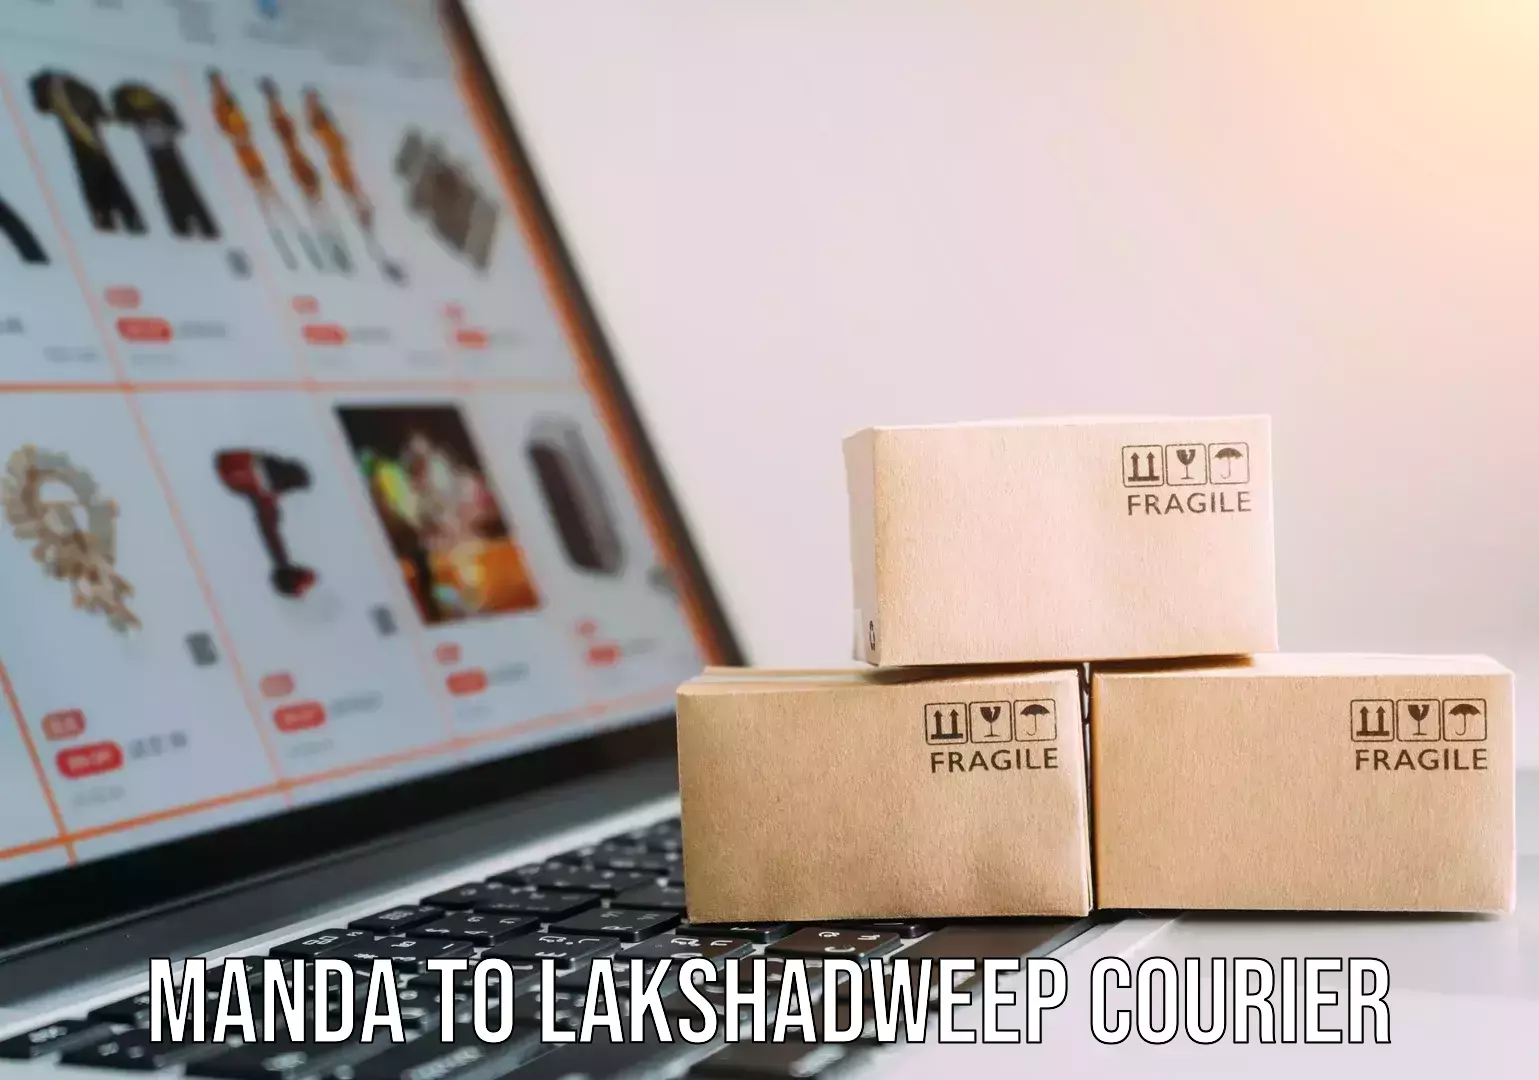 Furniture moving experts Manda to Lakshadweep